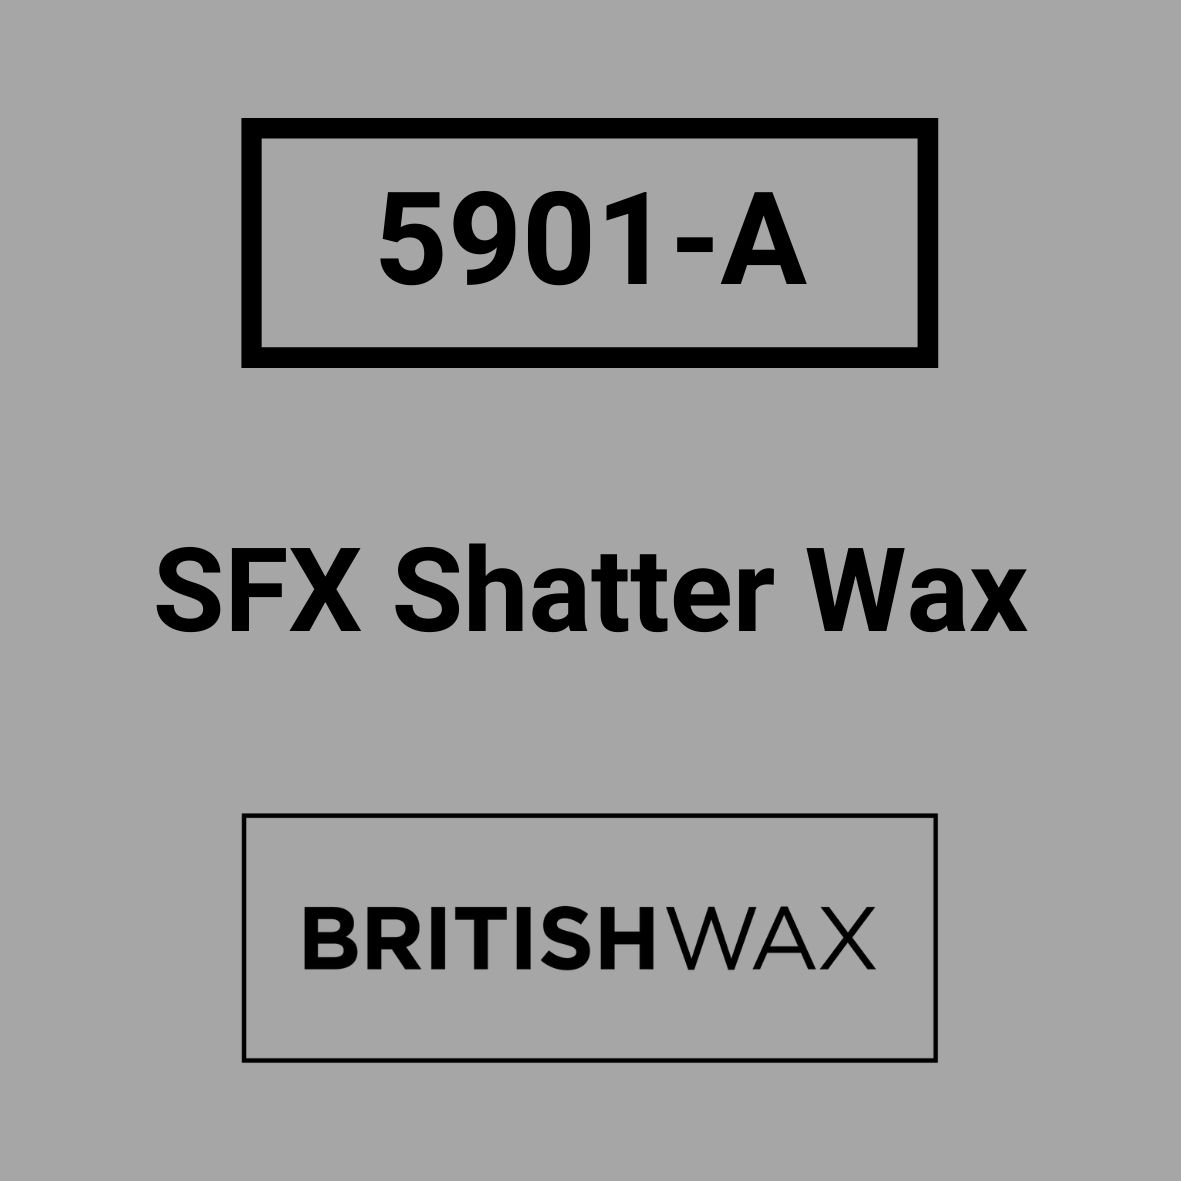 5901-A SFX Shatter Wax